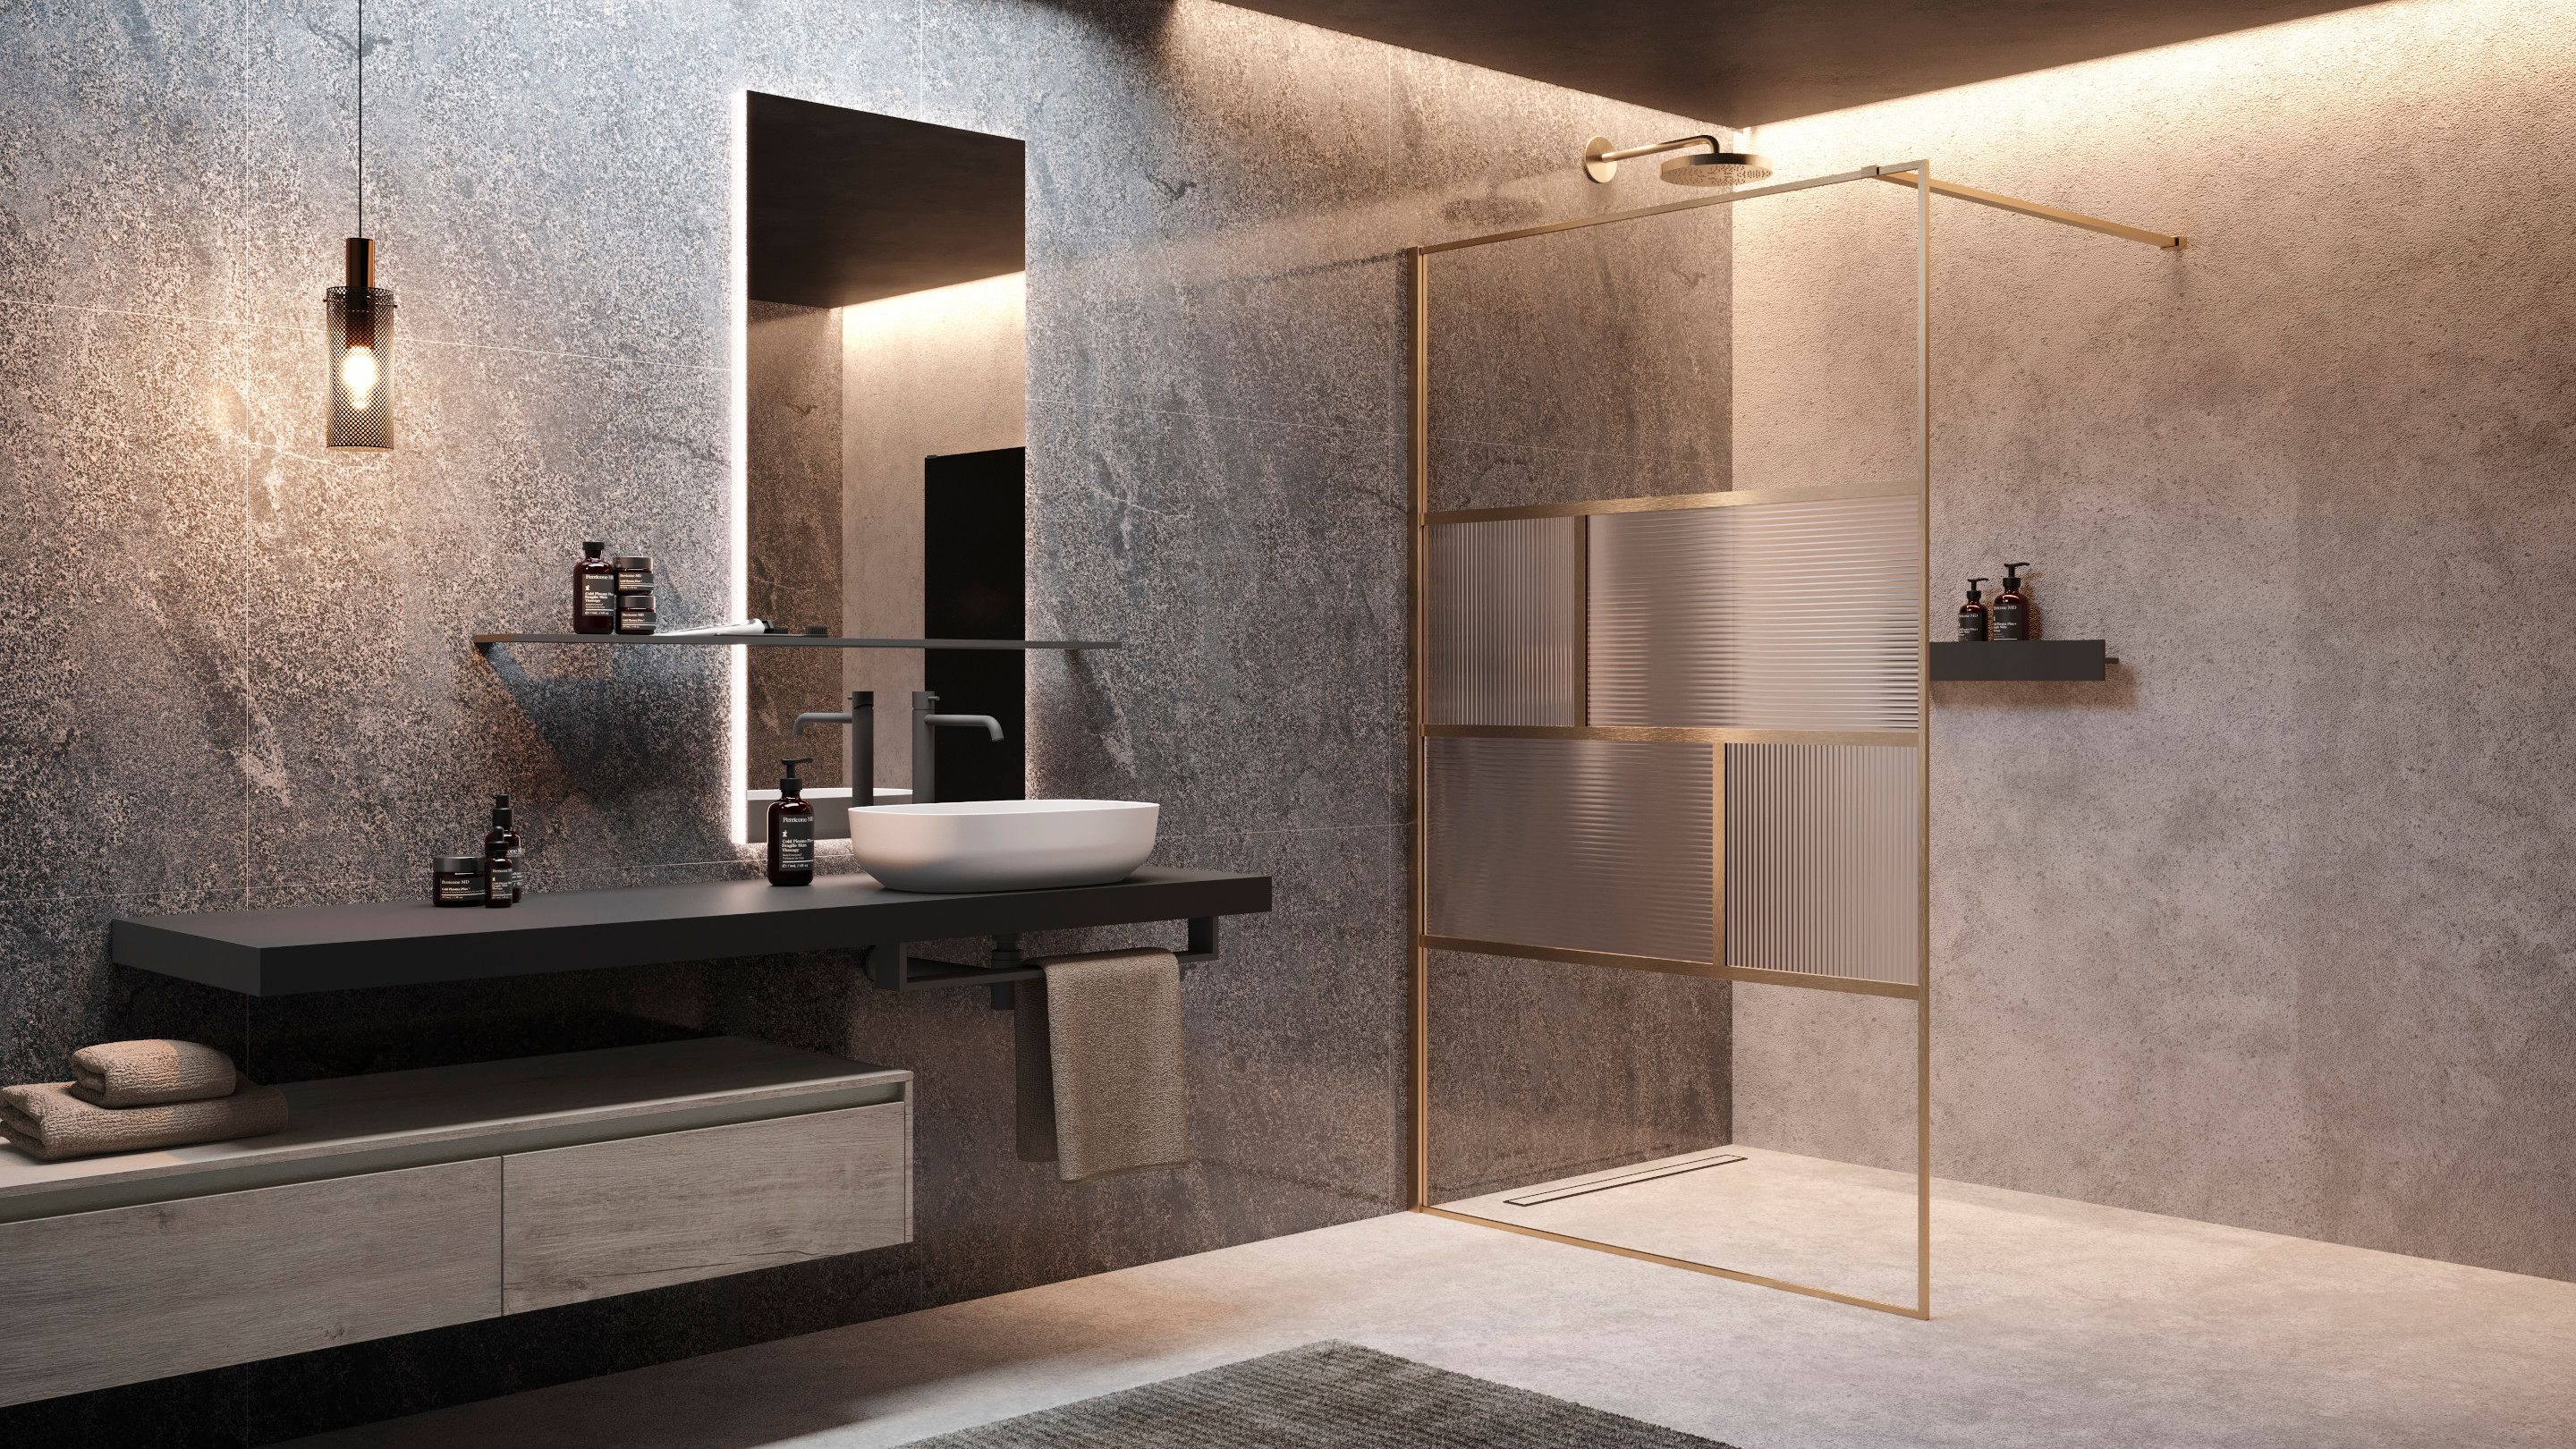 Badrum med tvättställ och en duschmiljö med en duschvägg med ett linjerat mönster.